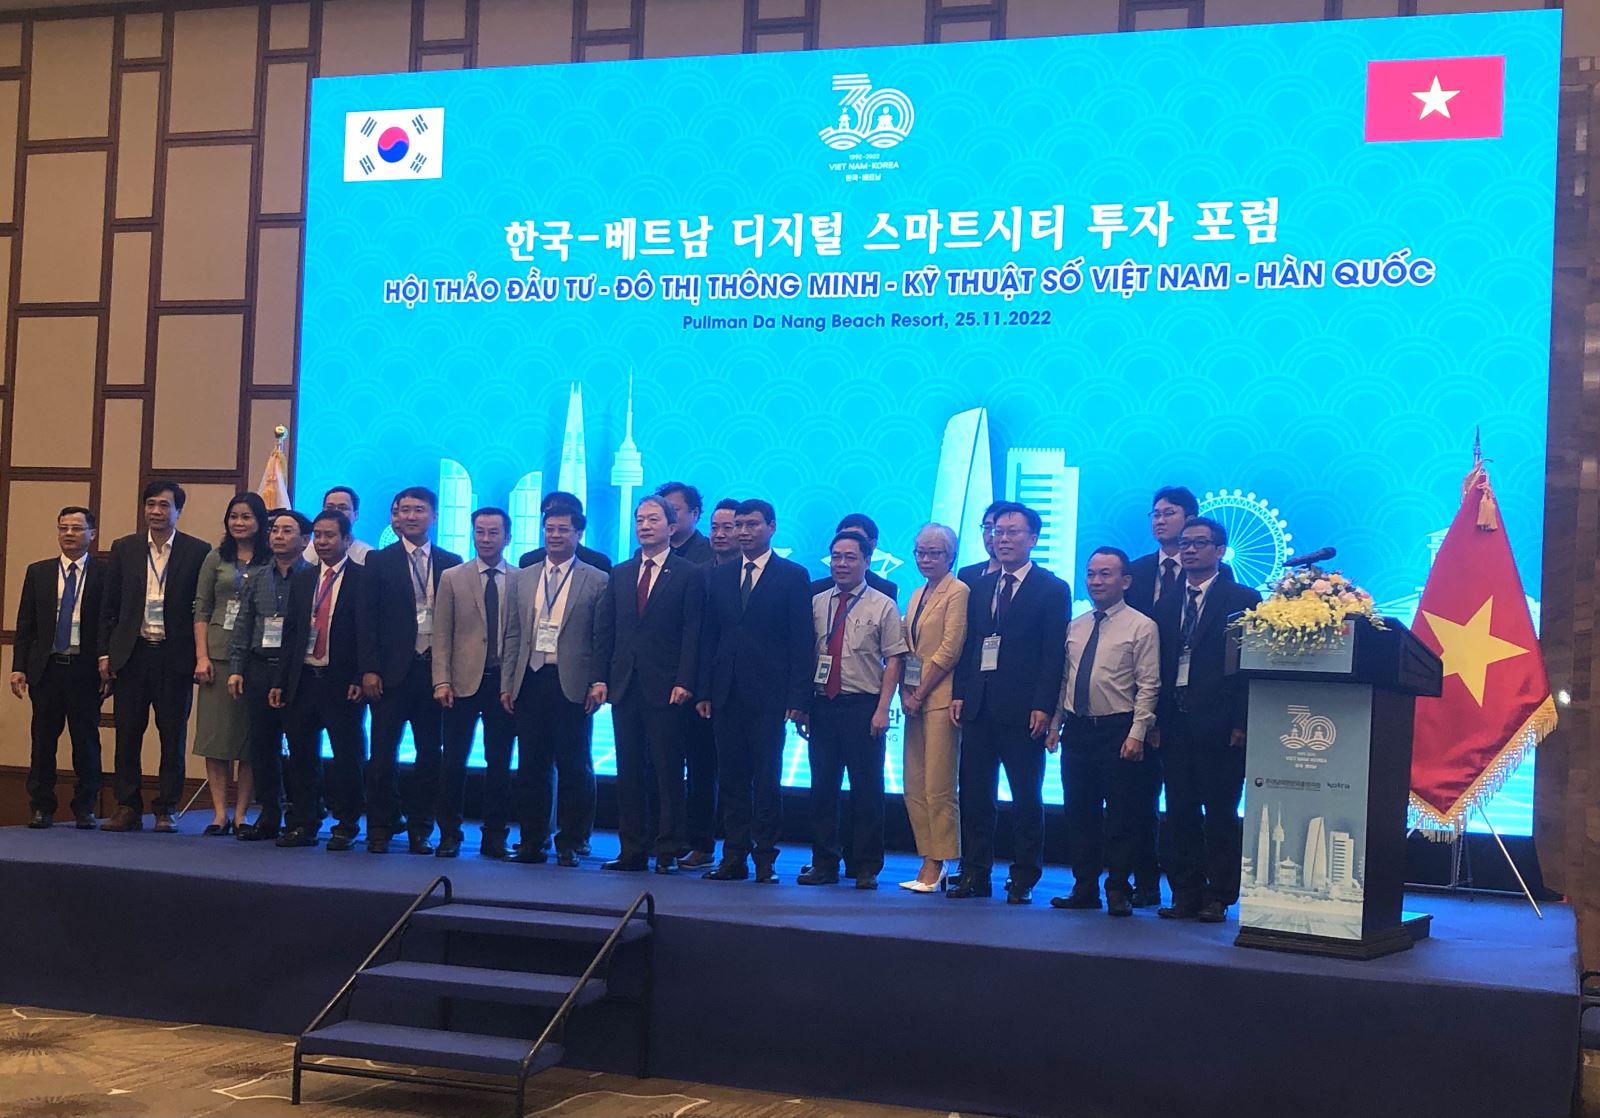 Đà Nẵng: Hội thảo Đầu tư - Đô thị thông minh - kỹ thuật số Việt Nam - Hàn Quốc